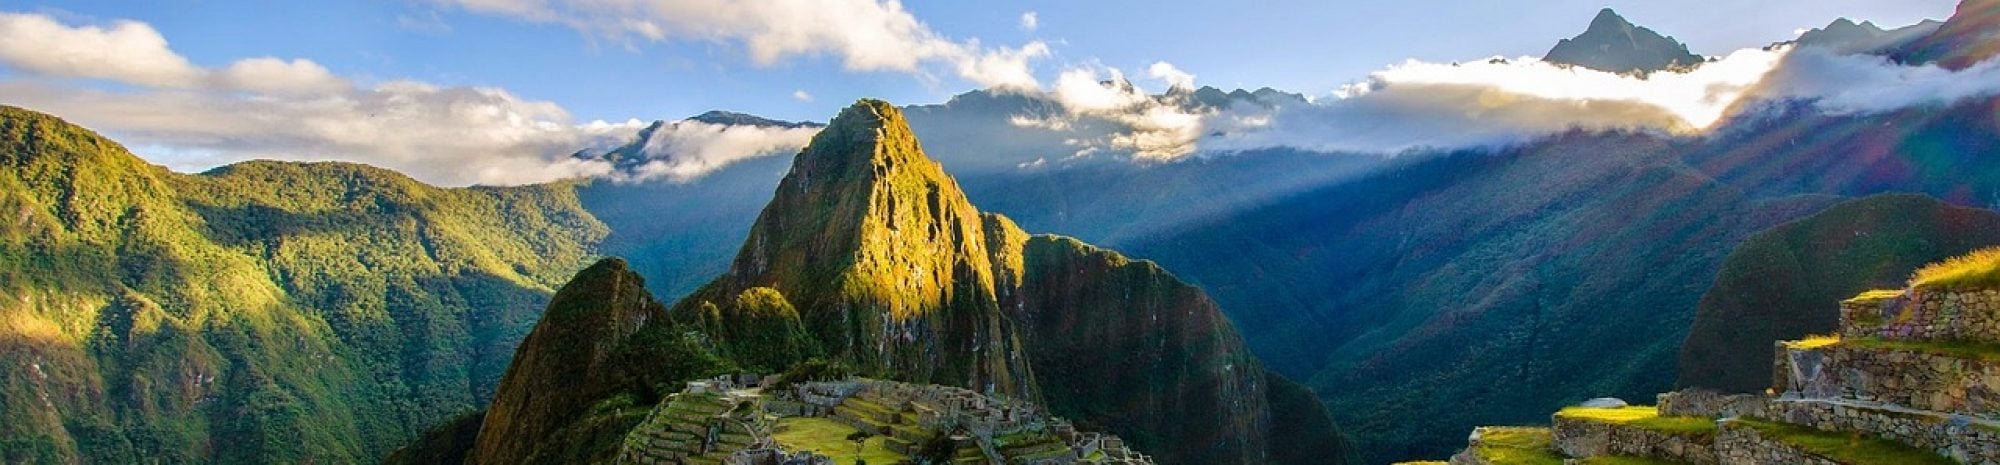 Le Machu Picchu a une nouvelle politique de billets plus stricte